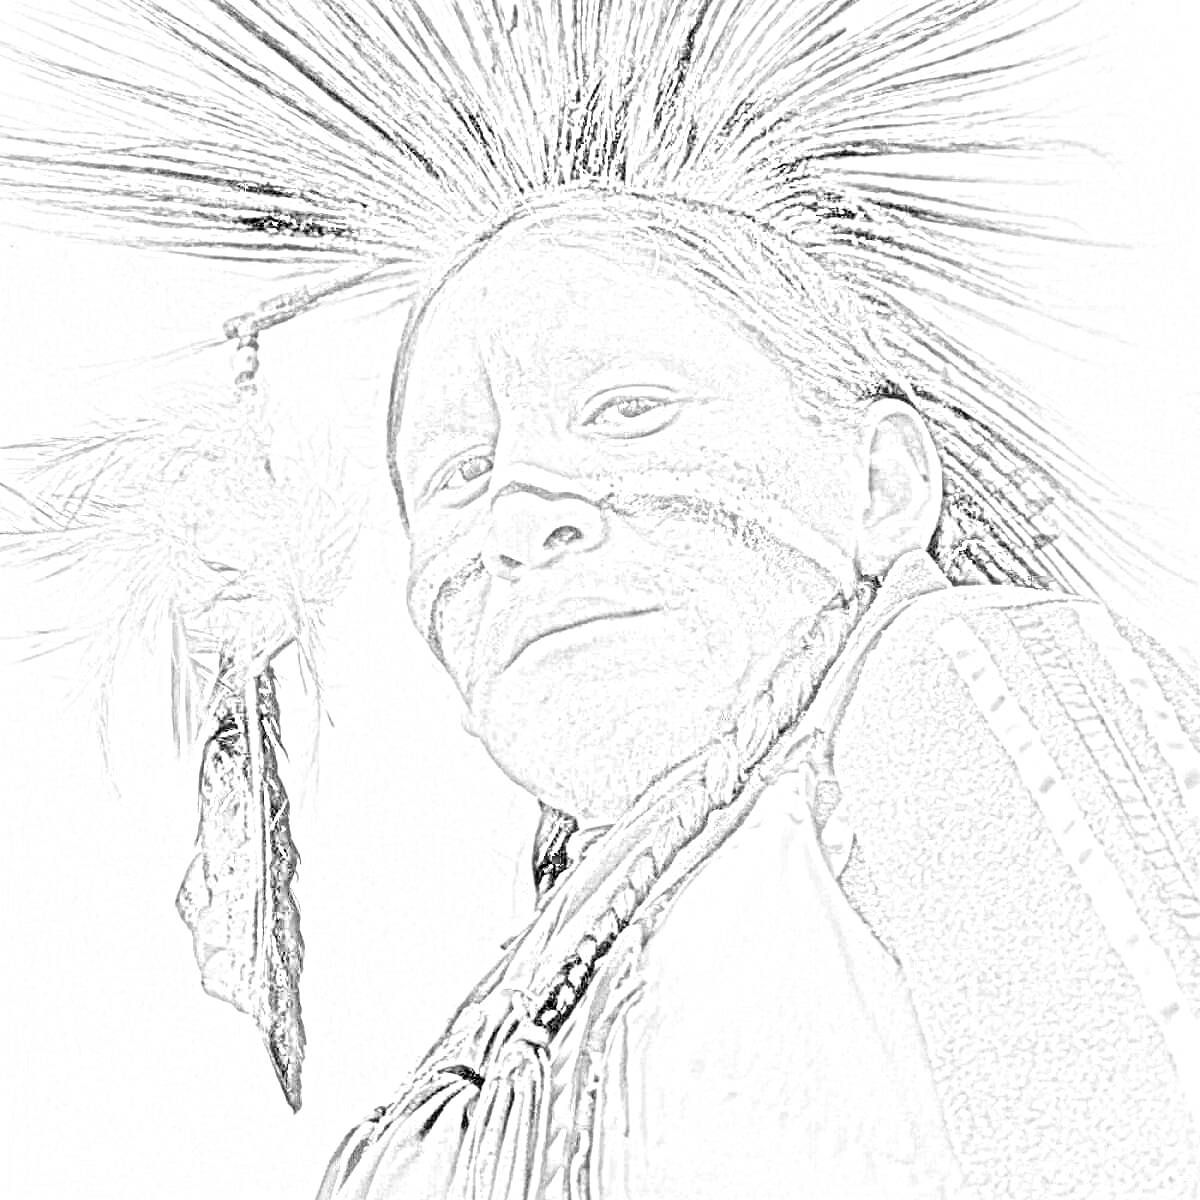 Раскраска Индейский воин с традиционным головным убором, боевой раскраской и украшением из перьев